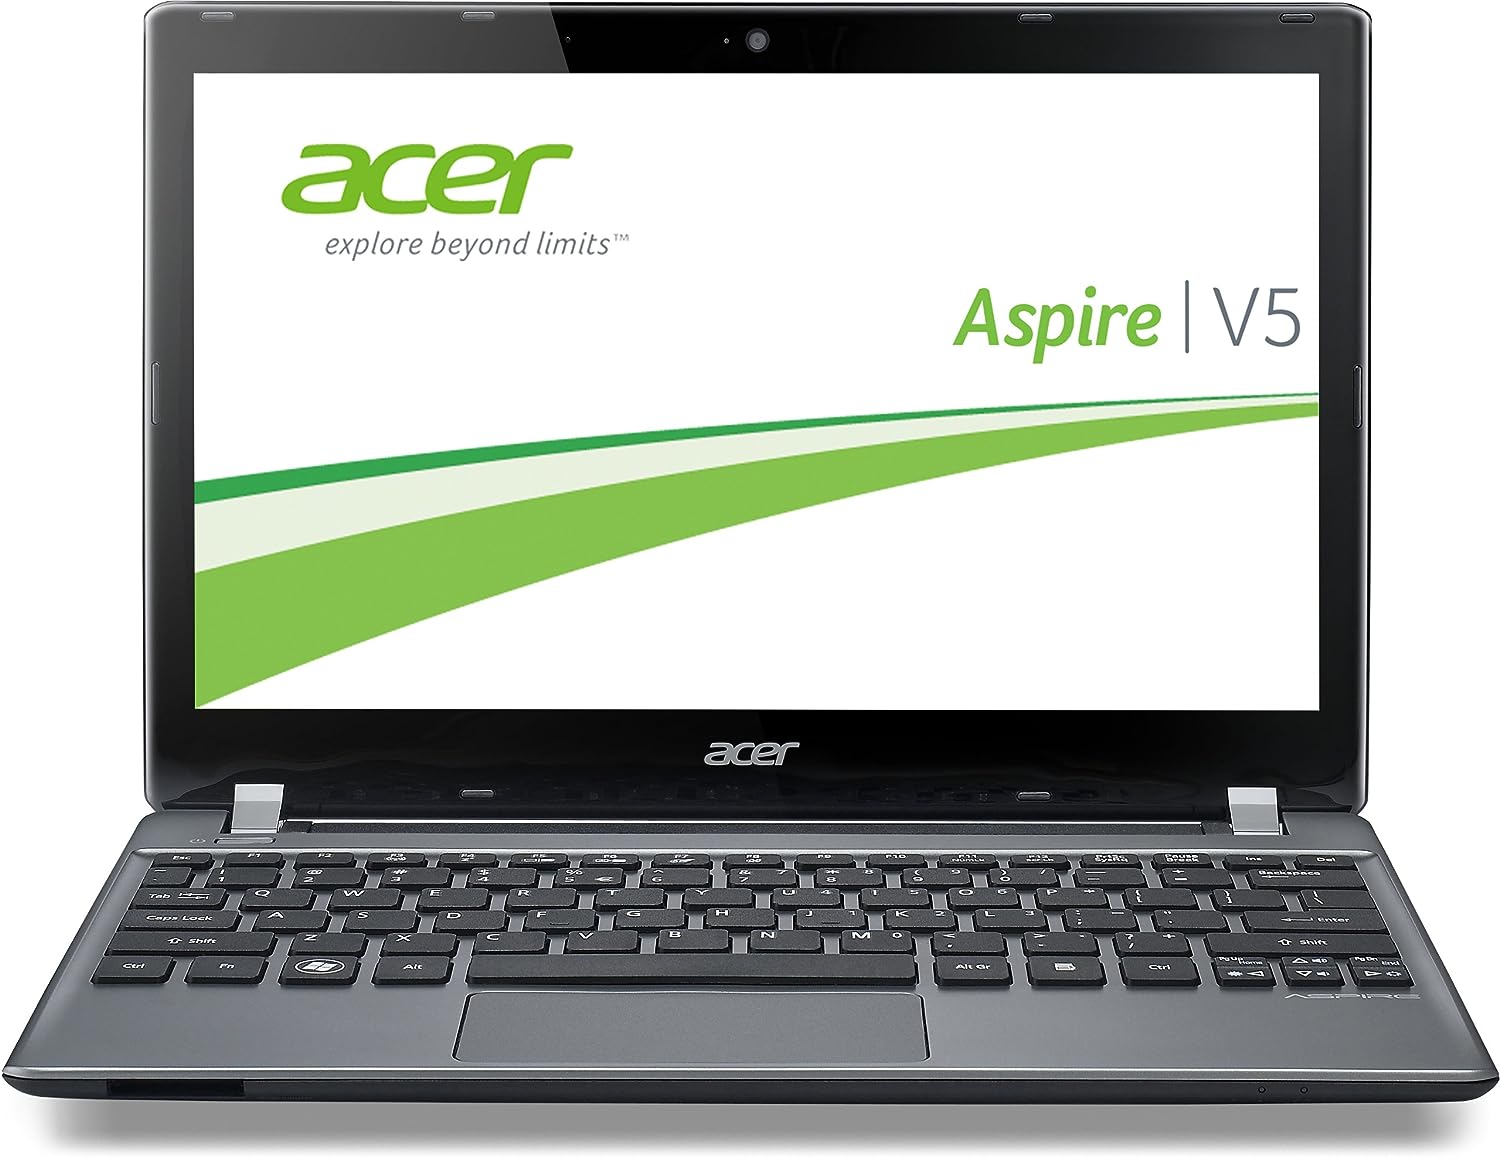 Acer Aspire V5-471PG Notebook